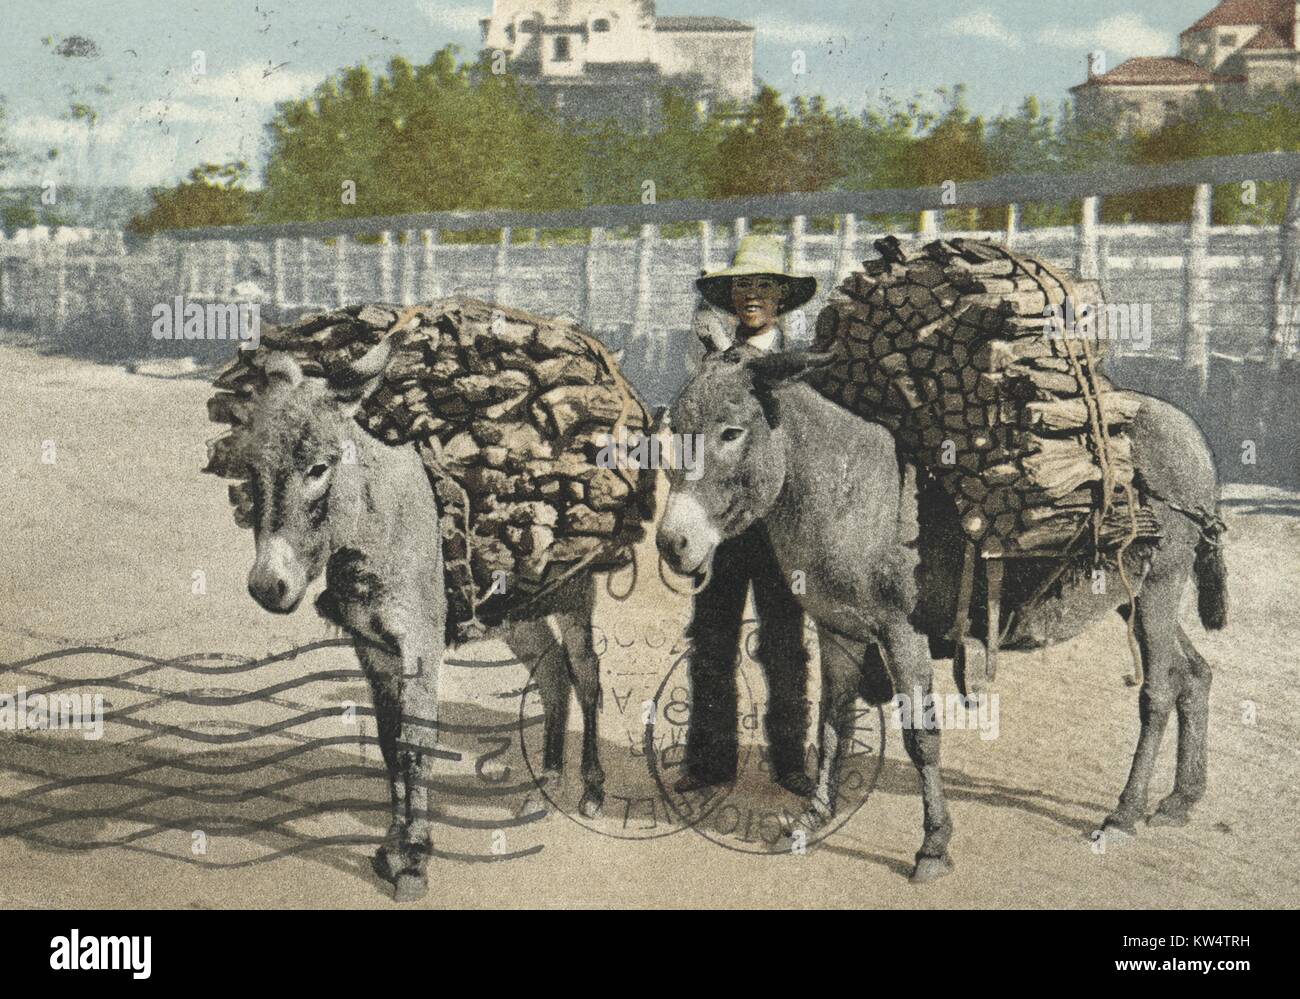 Carte postale montrant deux ânes transportant des charges de bois, 1914. À partir de la Bibliothèque publique de New York. Banque D'Images